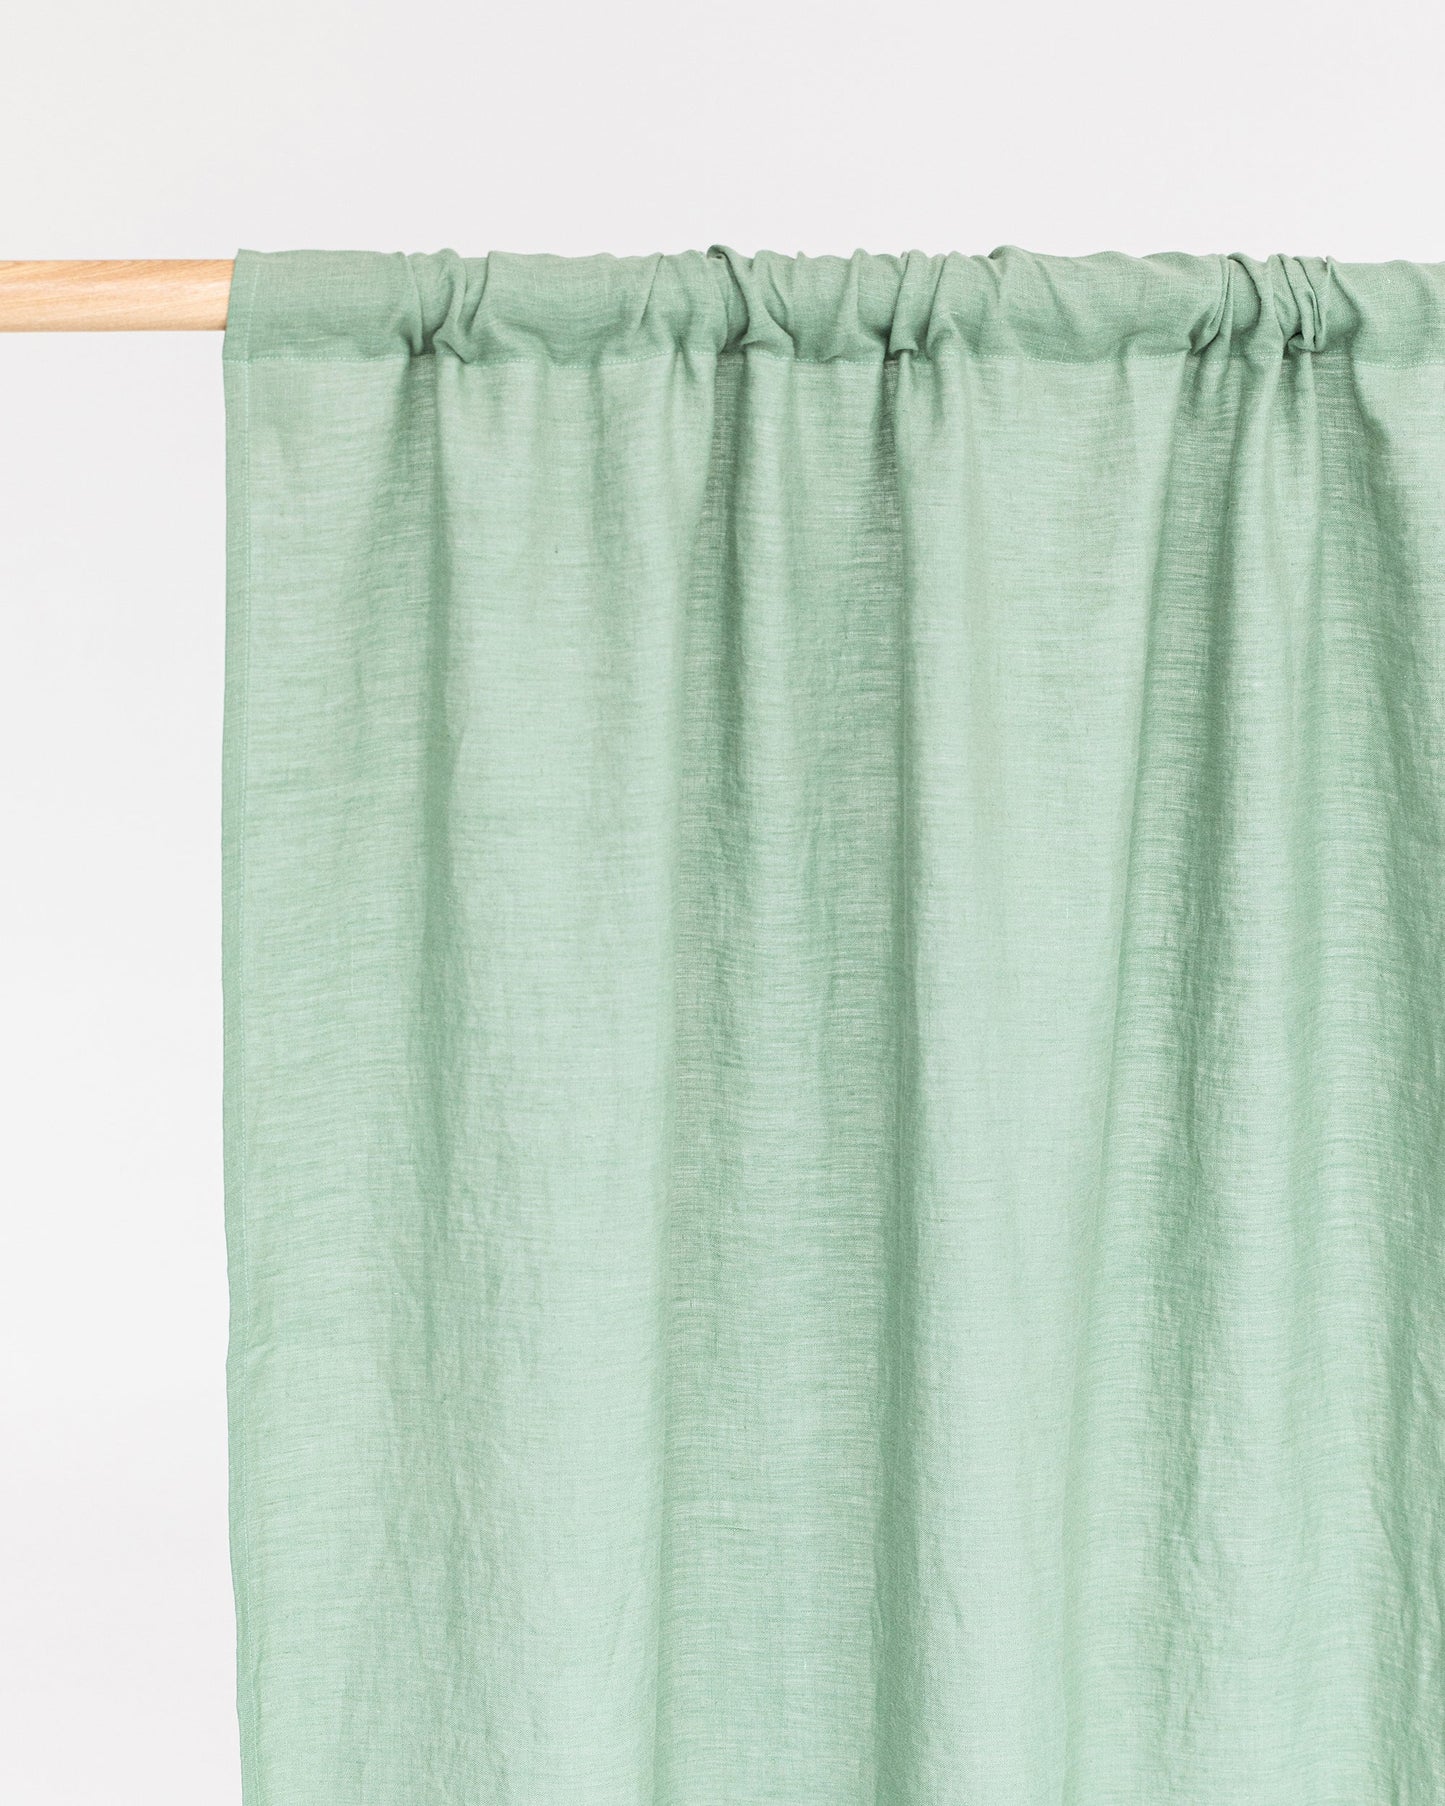 Rod Pocket Linen Curtain Panel in Matcha Green | Magiclinen – MagicLinen